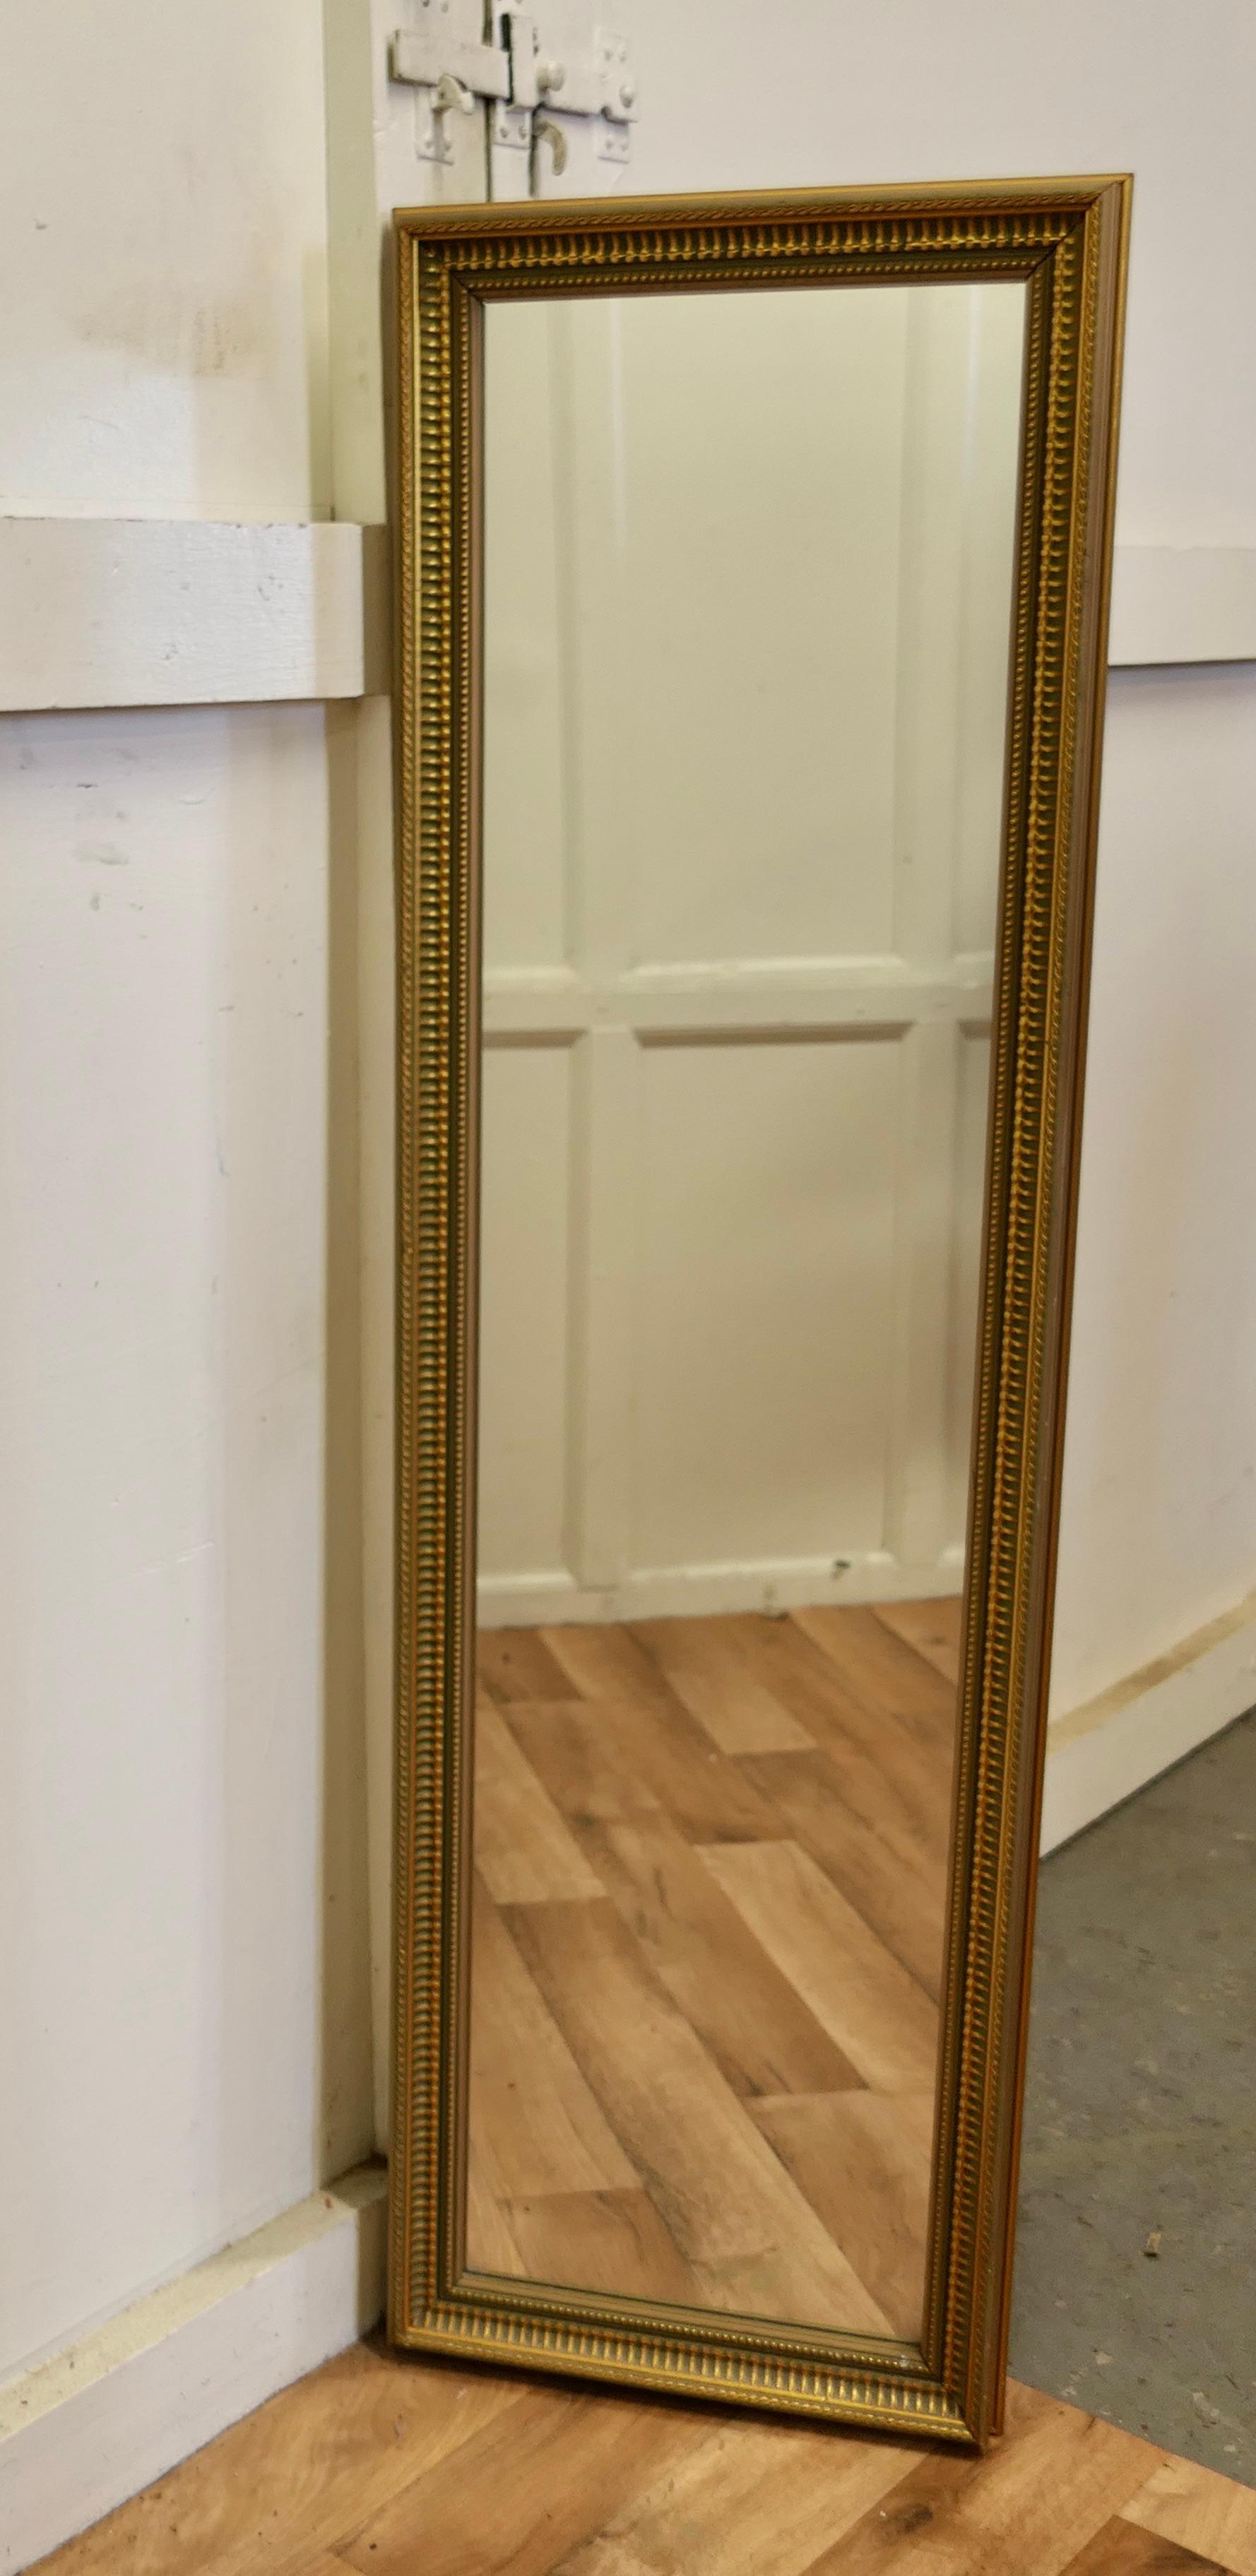 Miroir de toilette décoratif long doré/vert

Une pièce délicieuse, le miroir a un cadre doré de 2